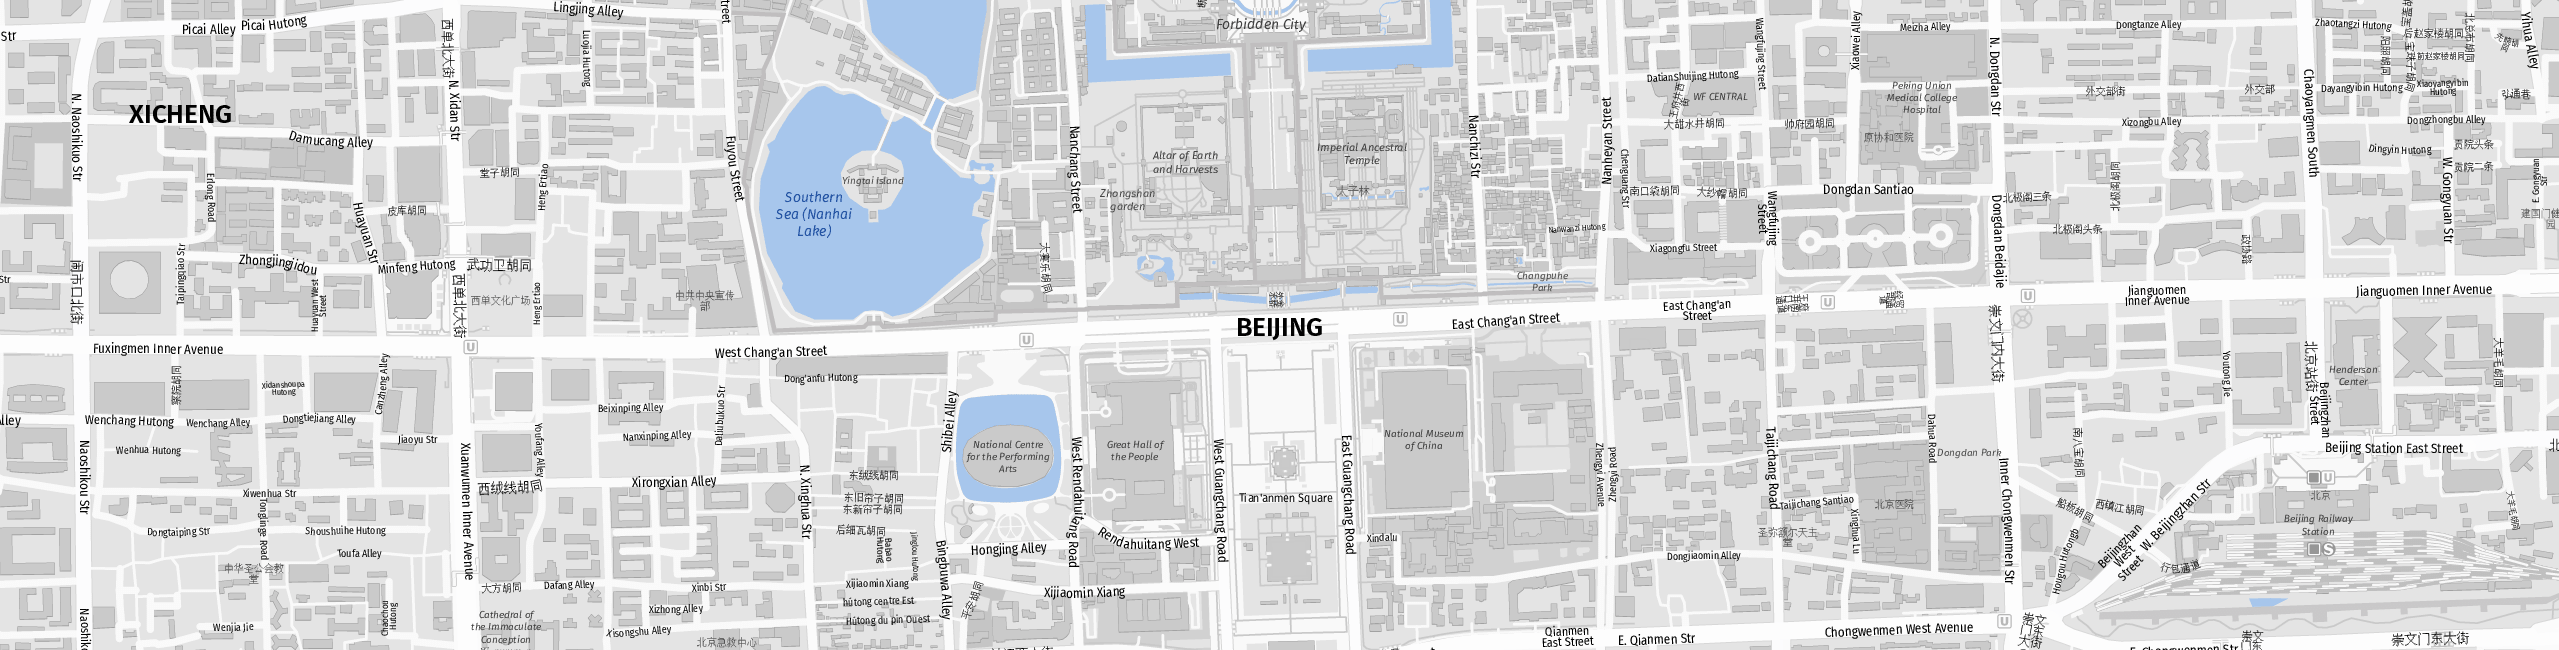 Stadtplan Beijing zum Downloaden.